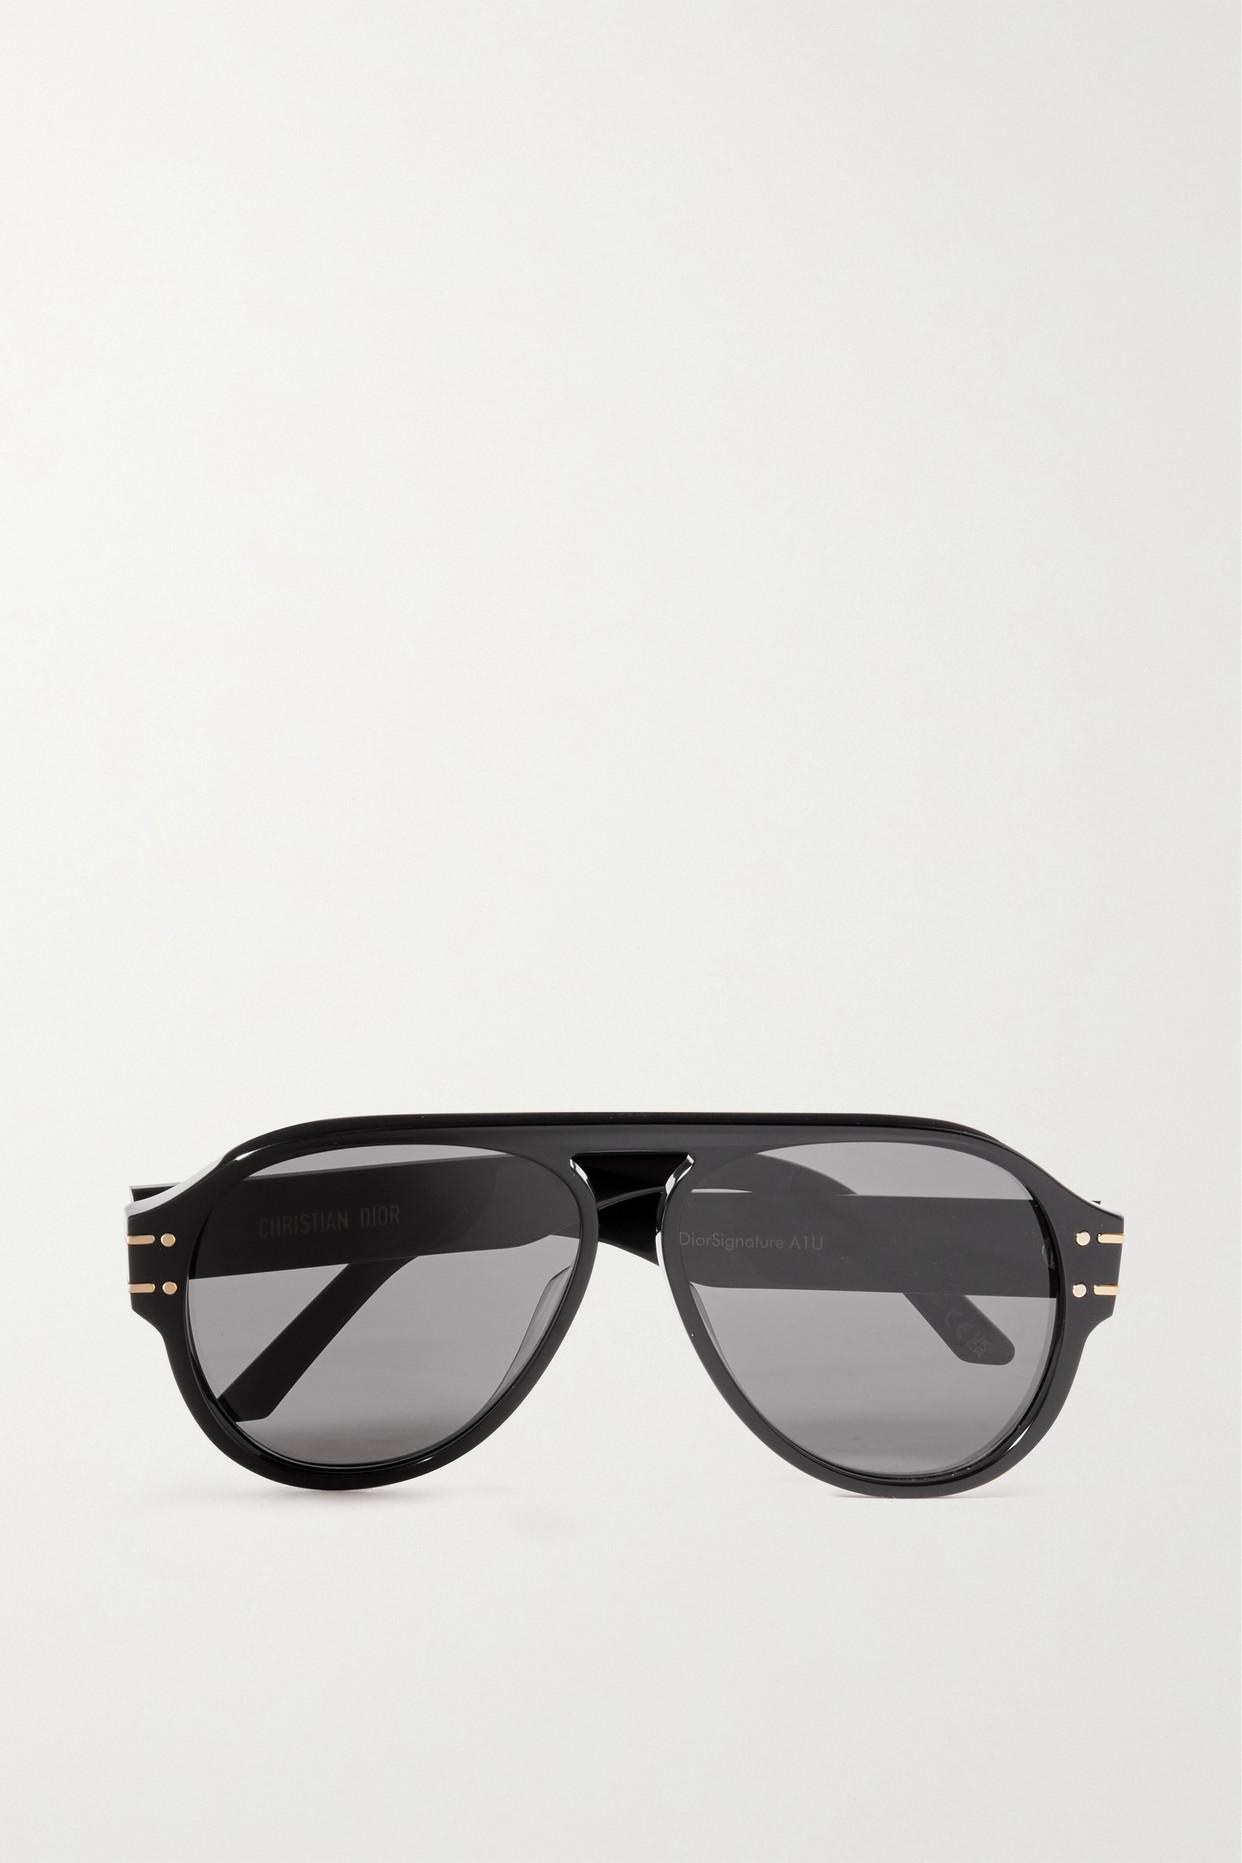 Dior Diorsignature A1u Aviator-style Acetate Sunglasses in Black | Lyst